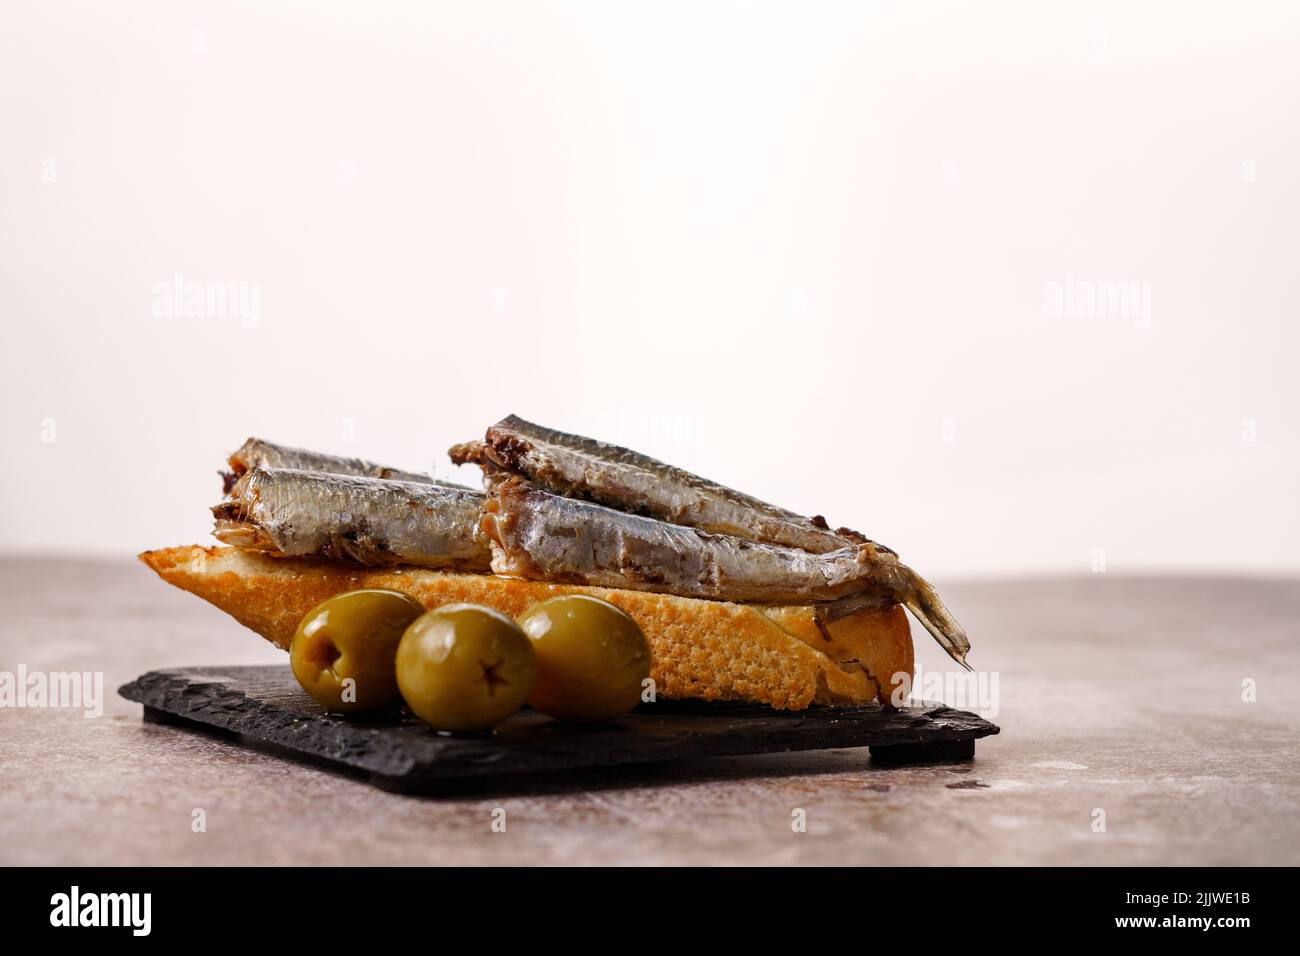 Tapa de sardines à la tomate et aux olives sur ardoise noire et fond blanc typiquement espagnol Banque D'Images